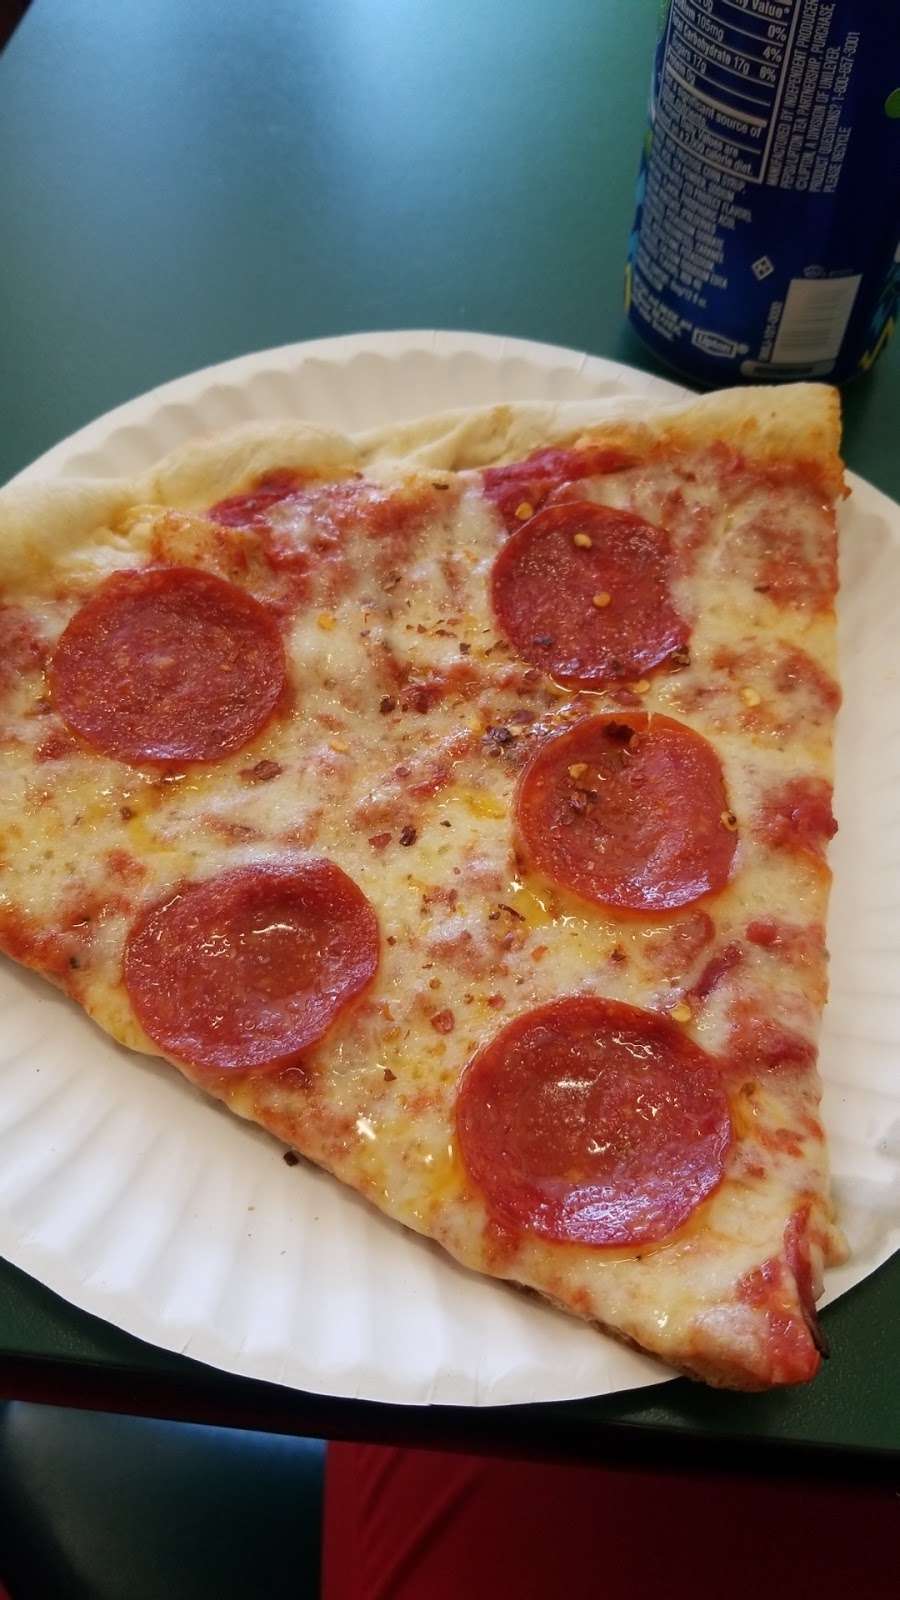 Nickys Pizza & Deli | 22 NY-59, Montebello, NY 10901 | Phone: (845) 357-7767